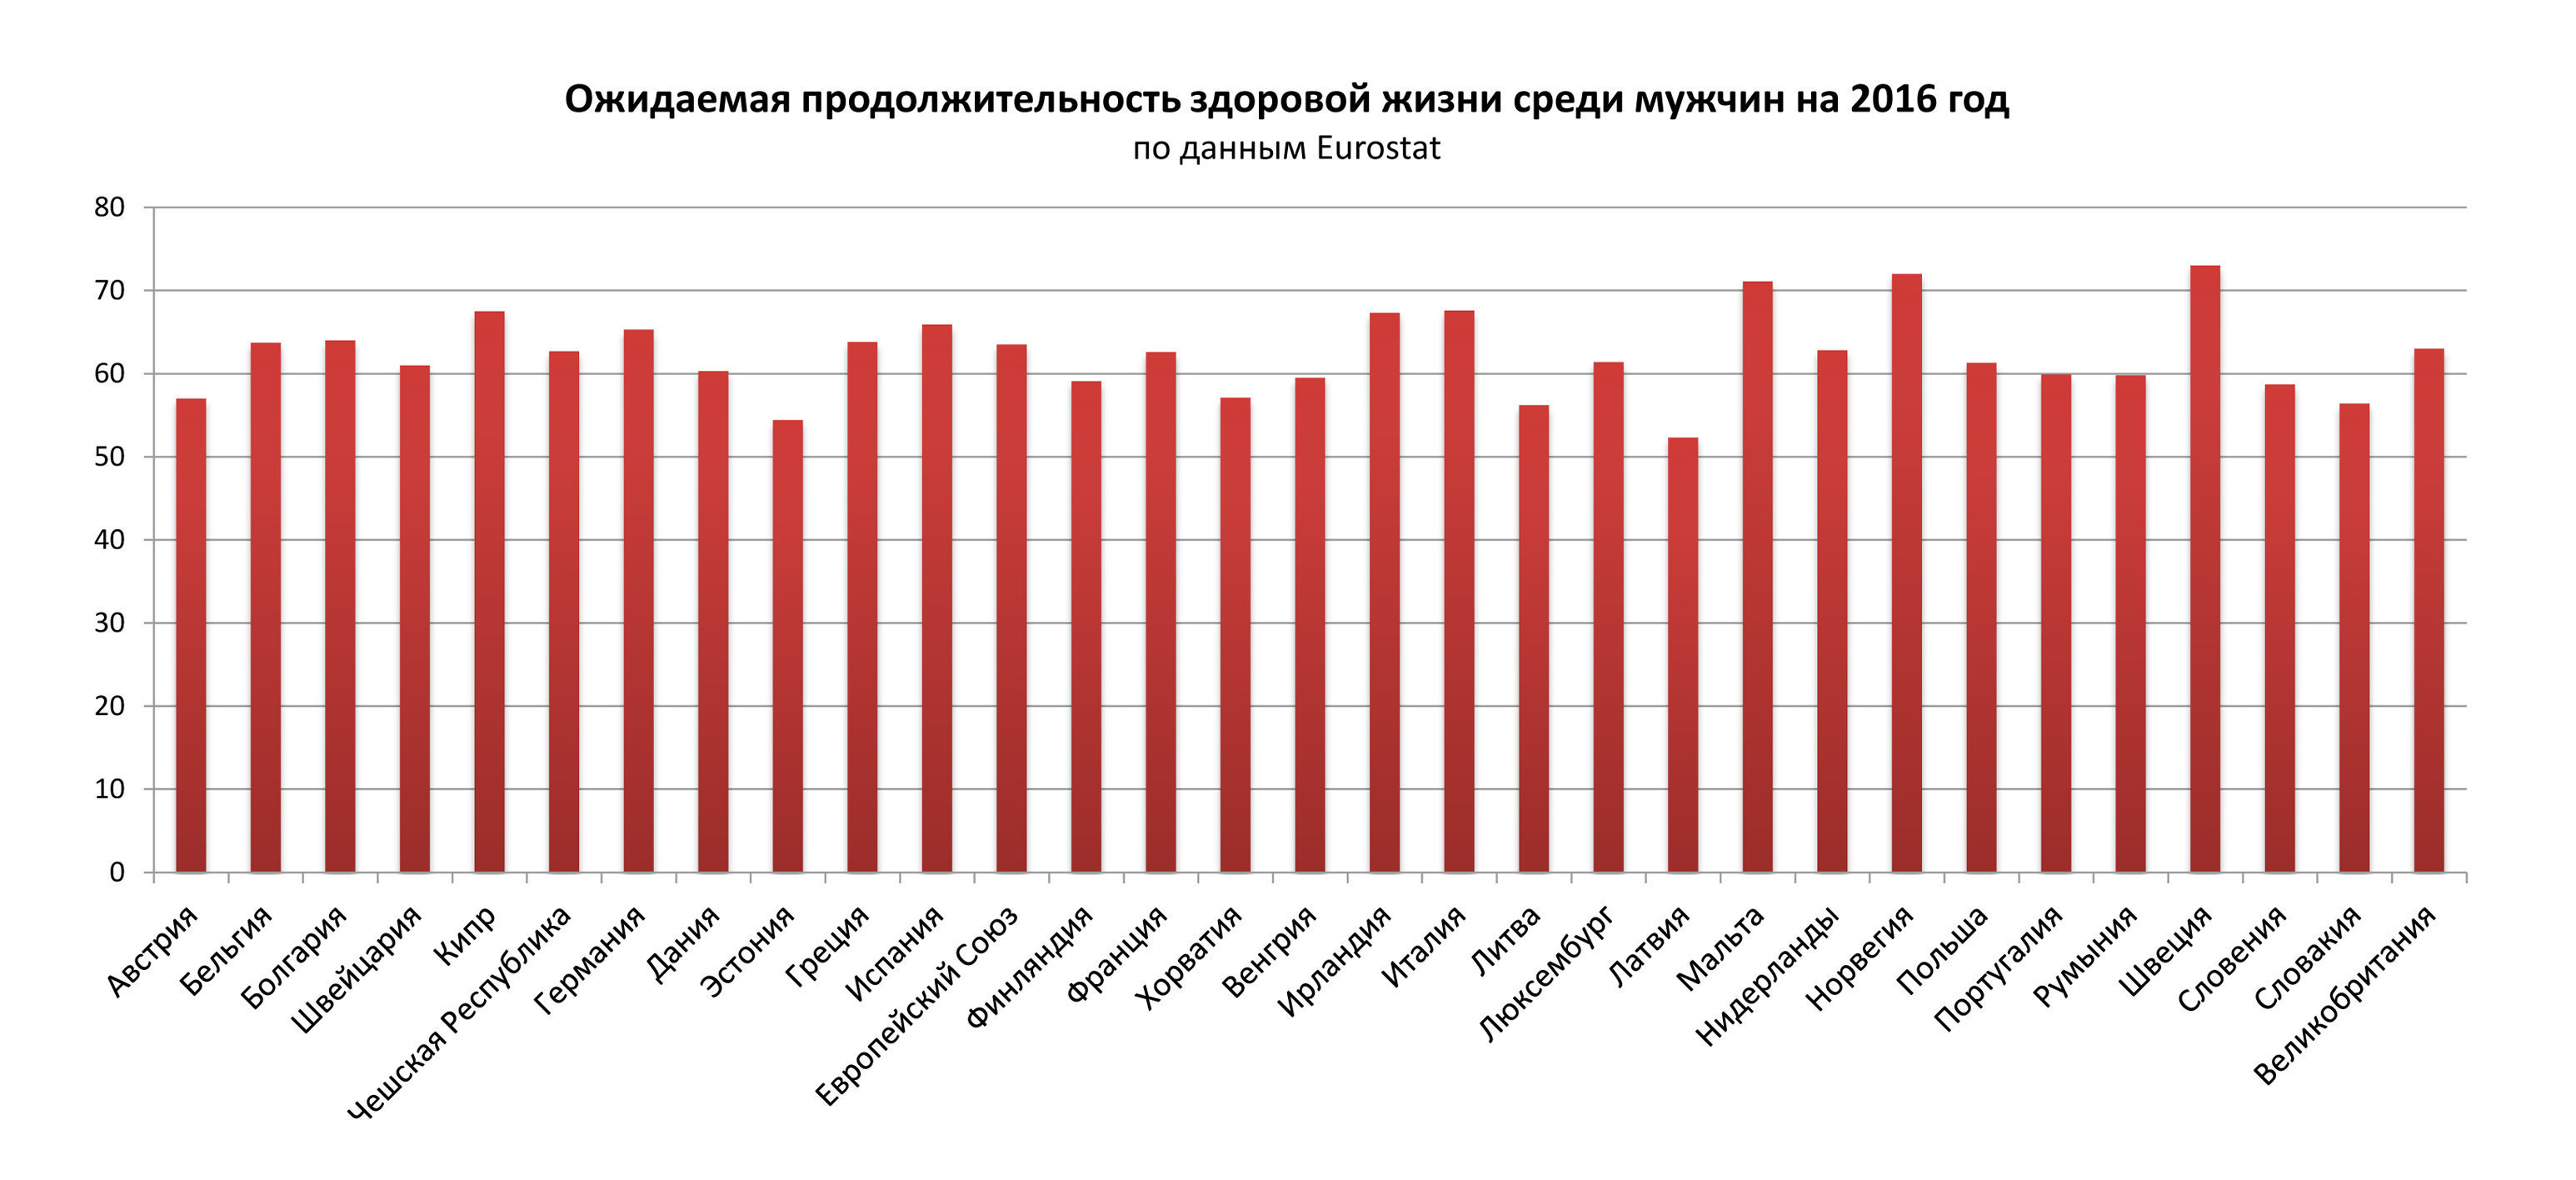 Что лучше: российская или латвийская пенсия? отвечают россияне, живущие в латвии